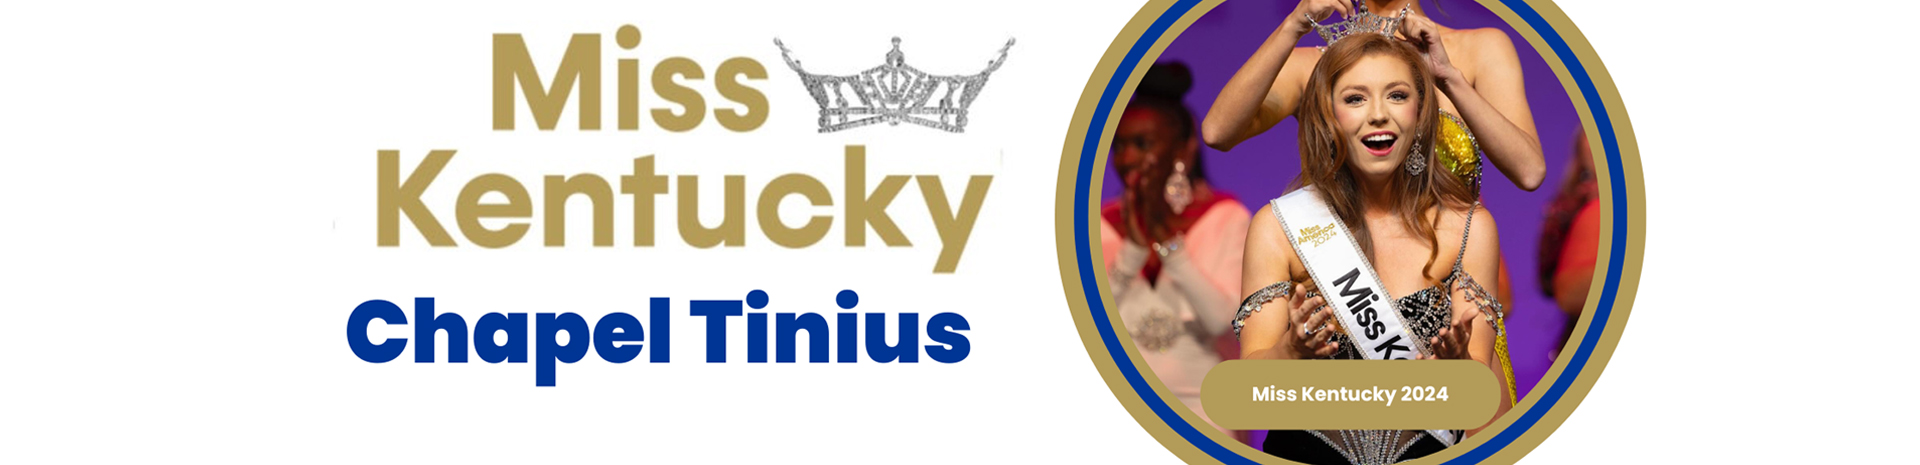 Miss Kentucky 2024 Chapel Tinius